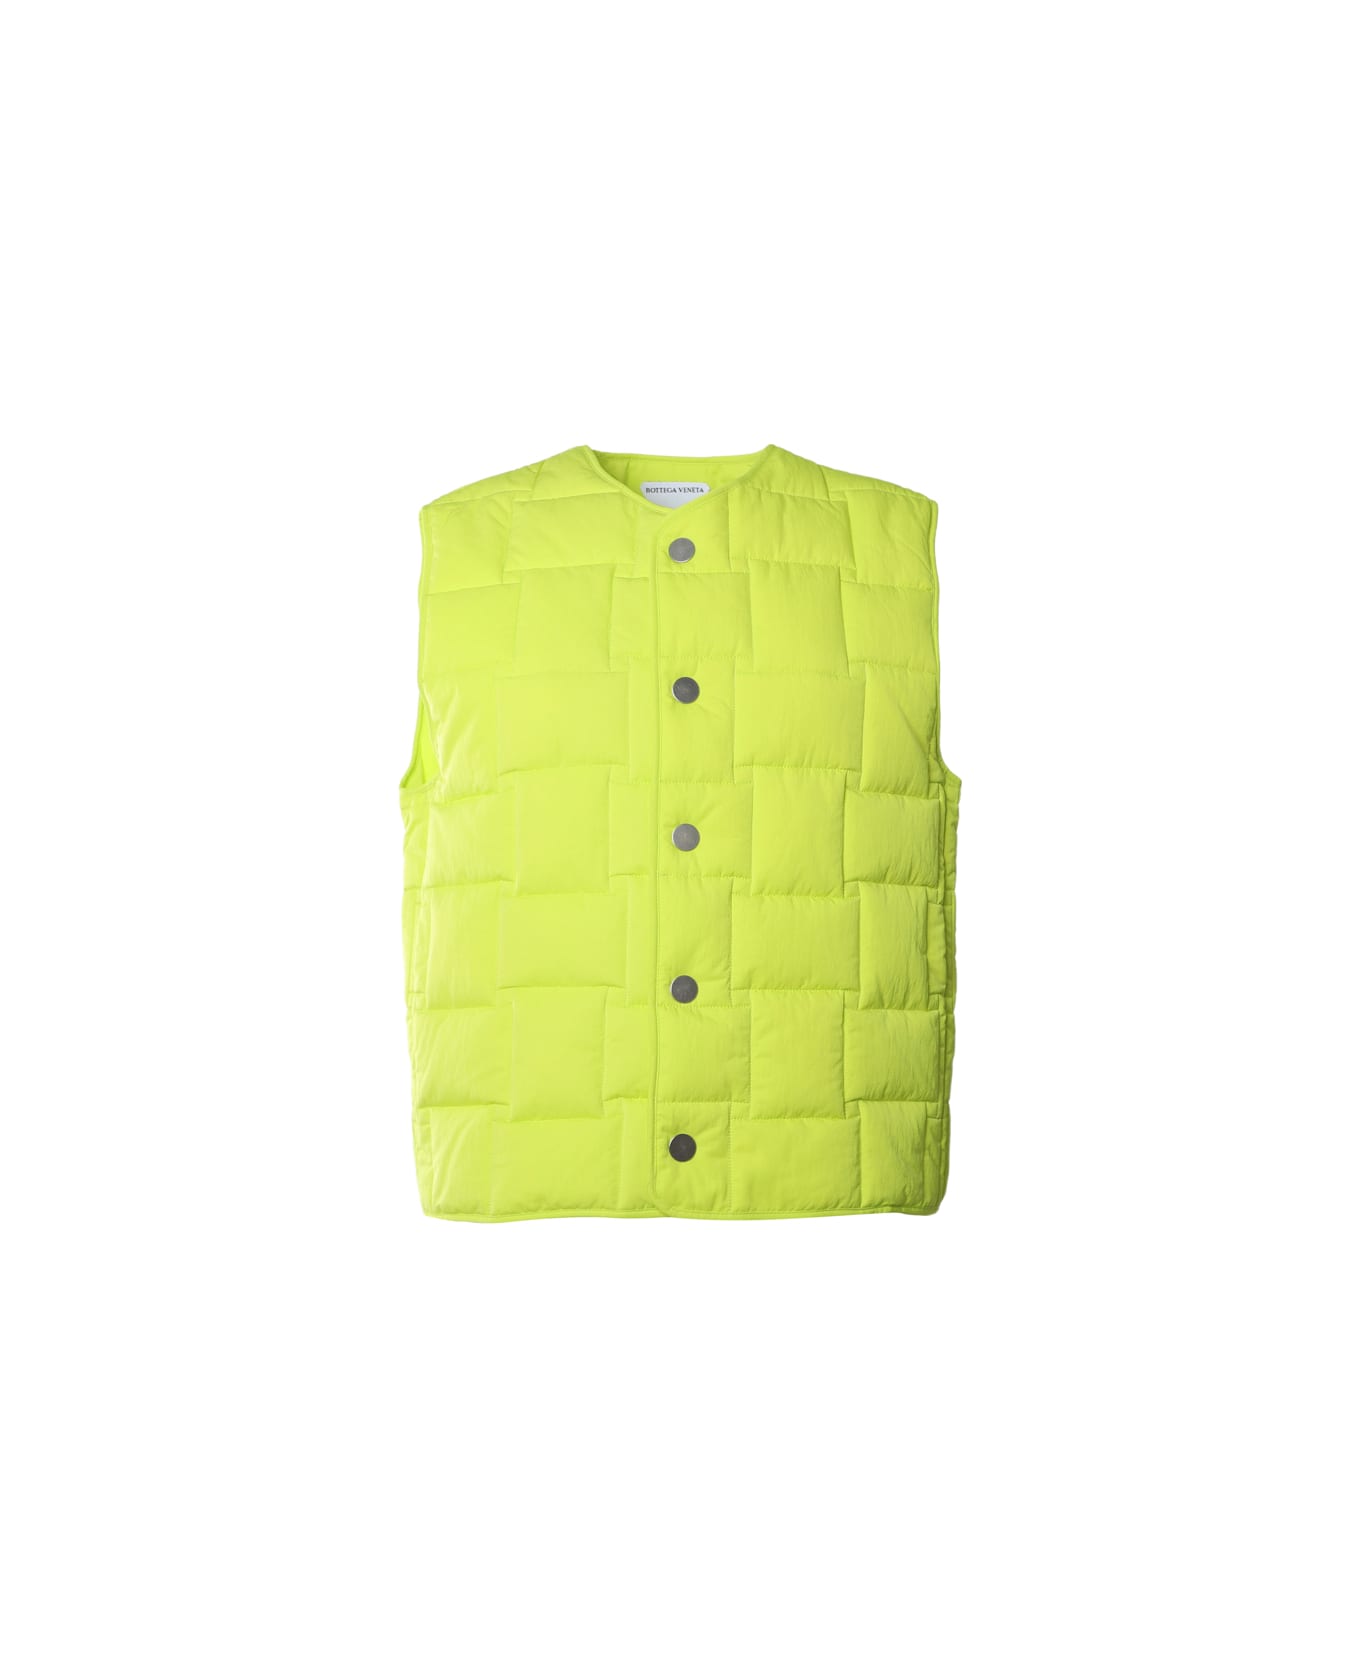 Bottega Veneta Technical Nylon Vest With All-over Woven Pattern